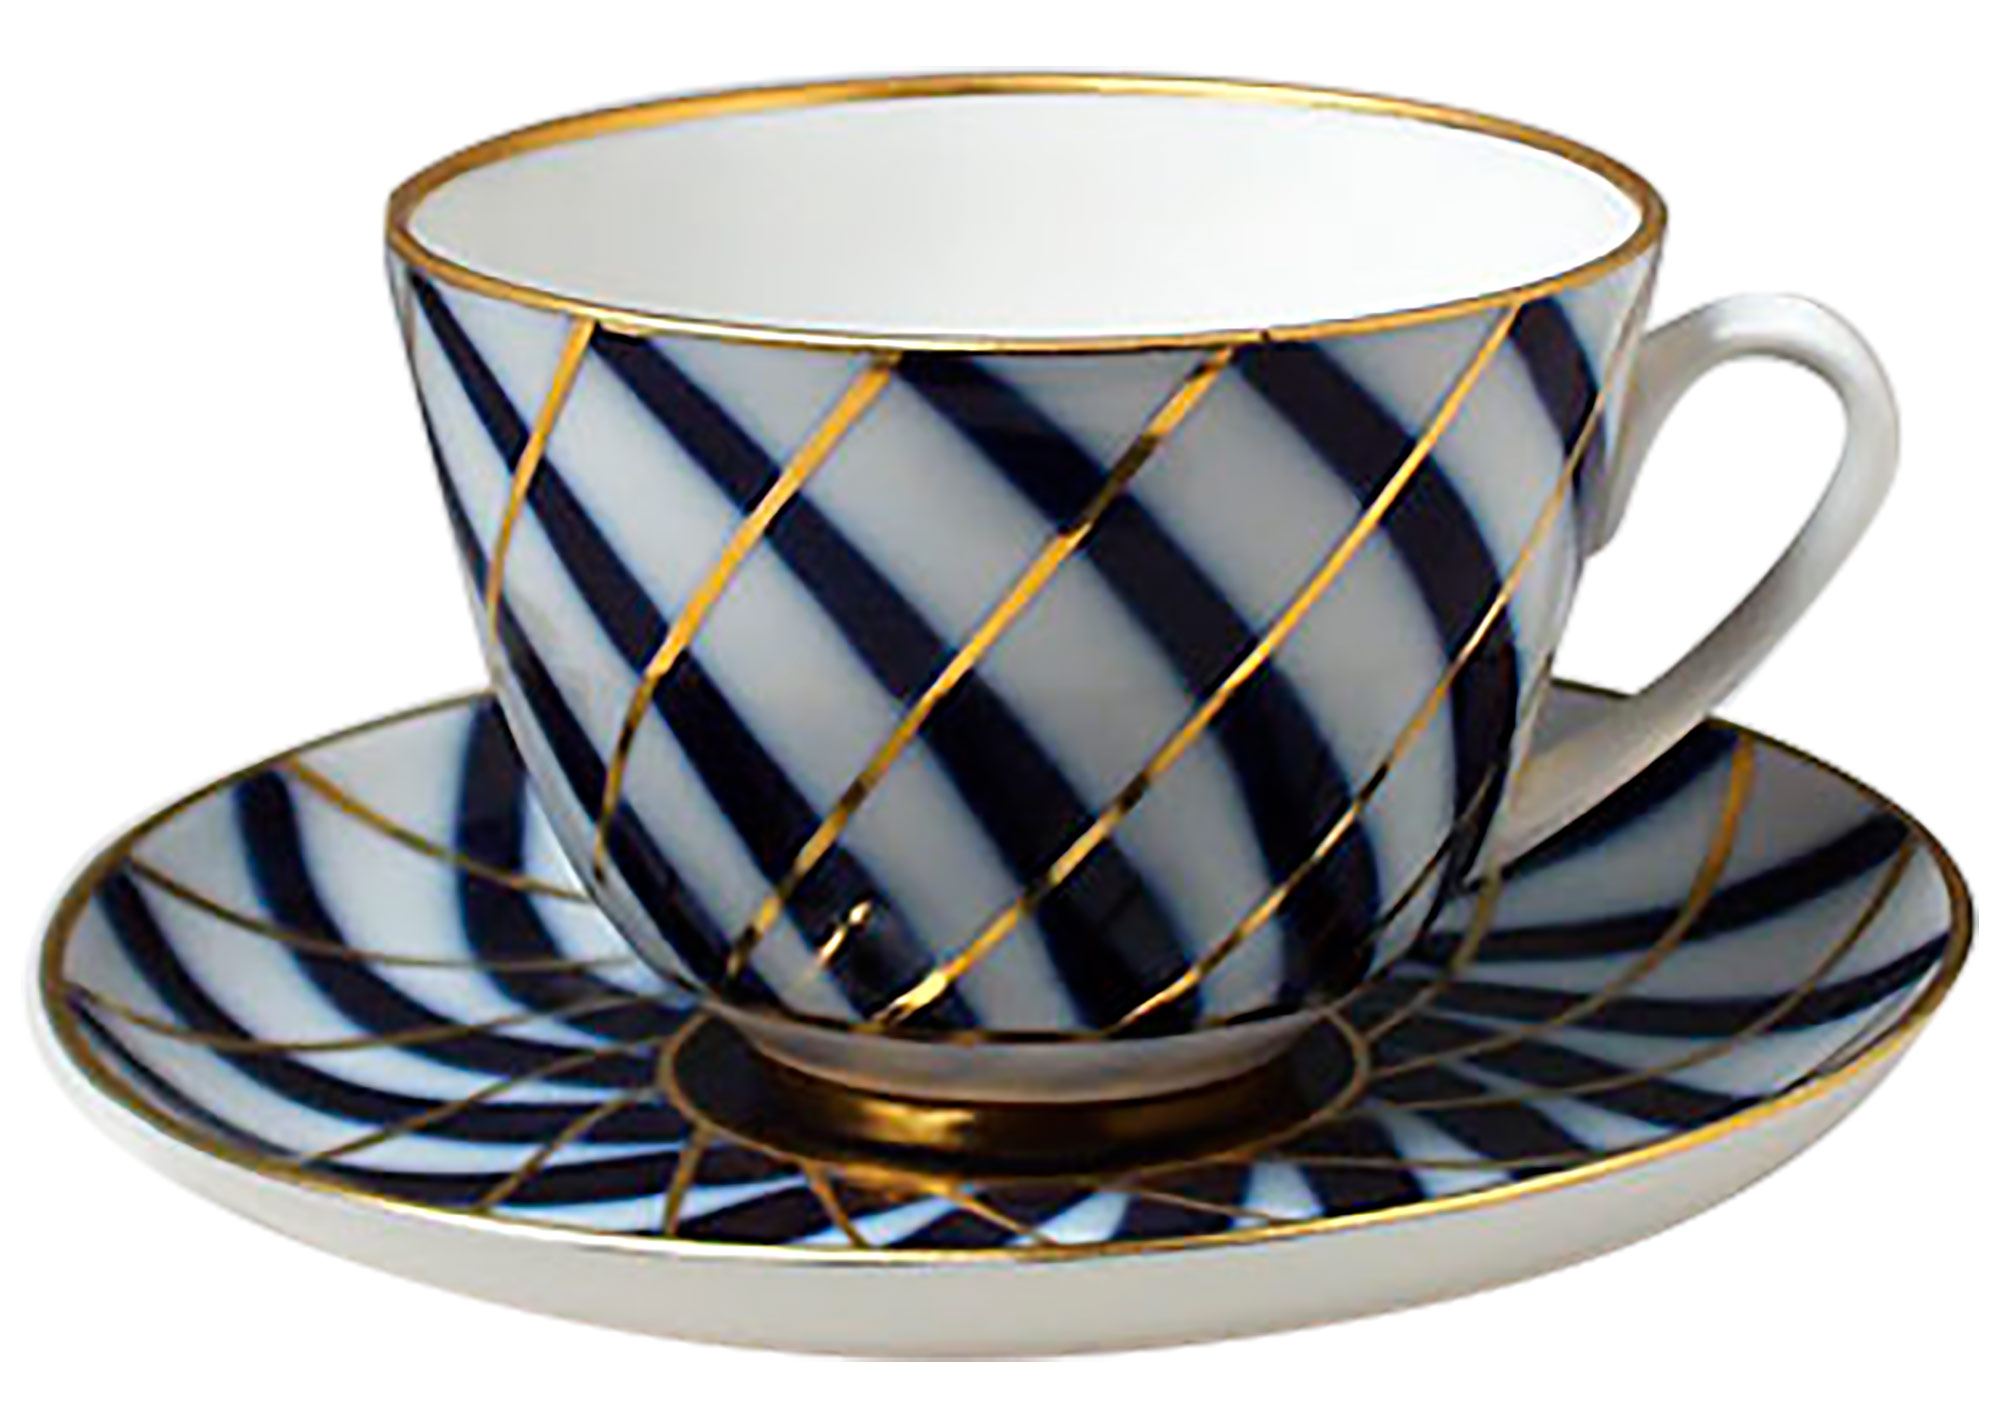 Buy Willow Tea Cup and Saucer at GoldenCockerel.com